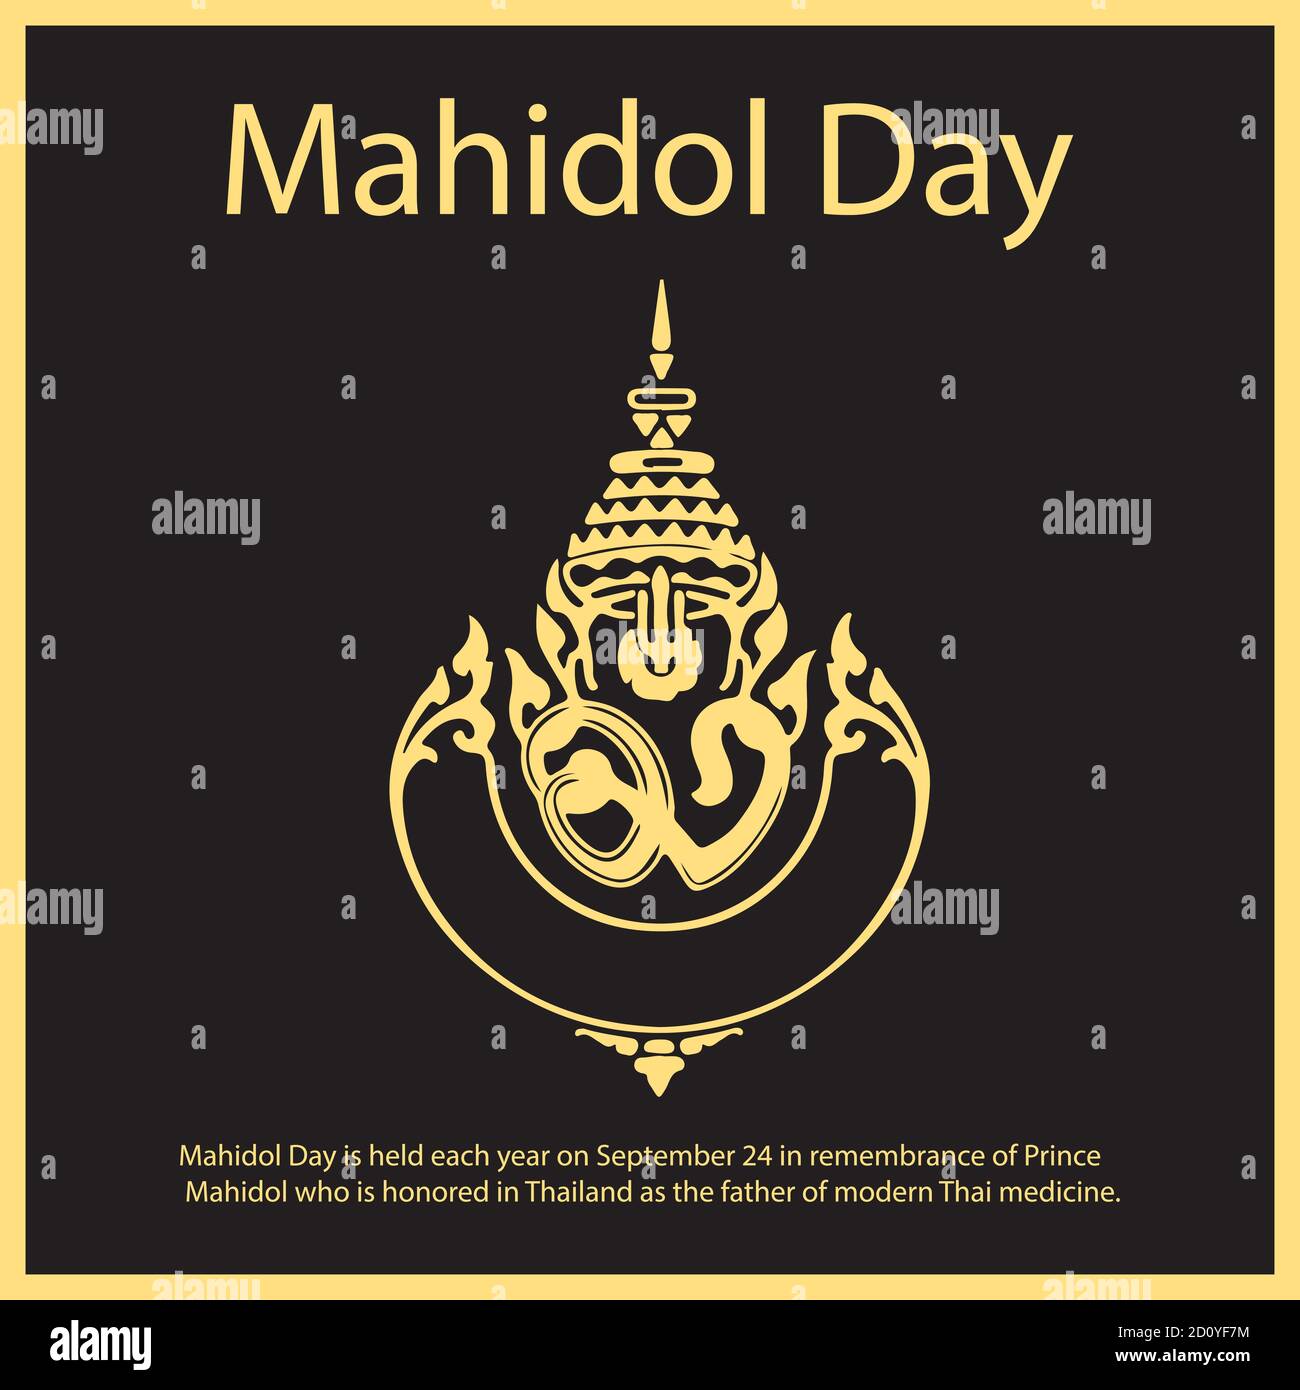 Mahidol Day si svolge ogni anno il 24 settembre in ricordo del principe Mahidol che è onorato in Thailandia come il padre della medicina tailandese moderna. Illustrazione Vettoriale